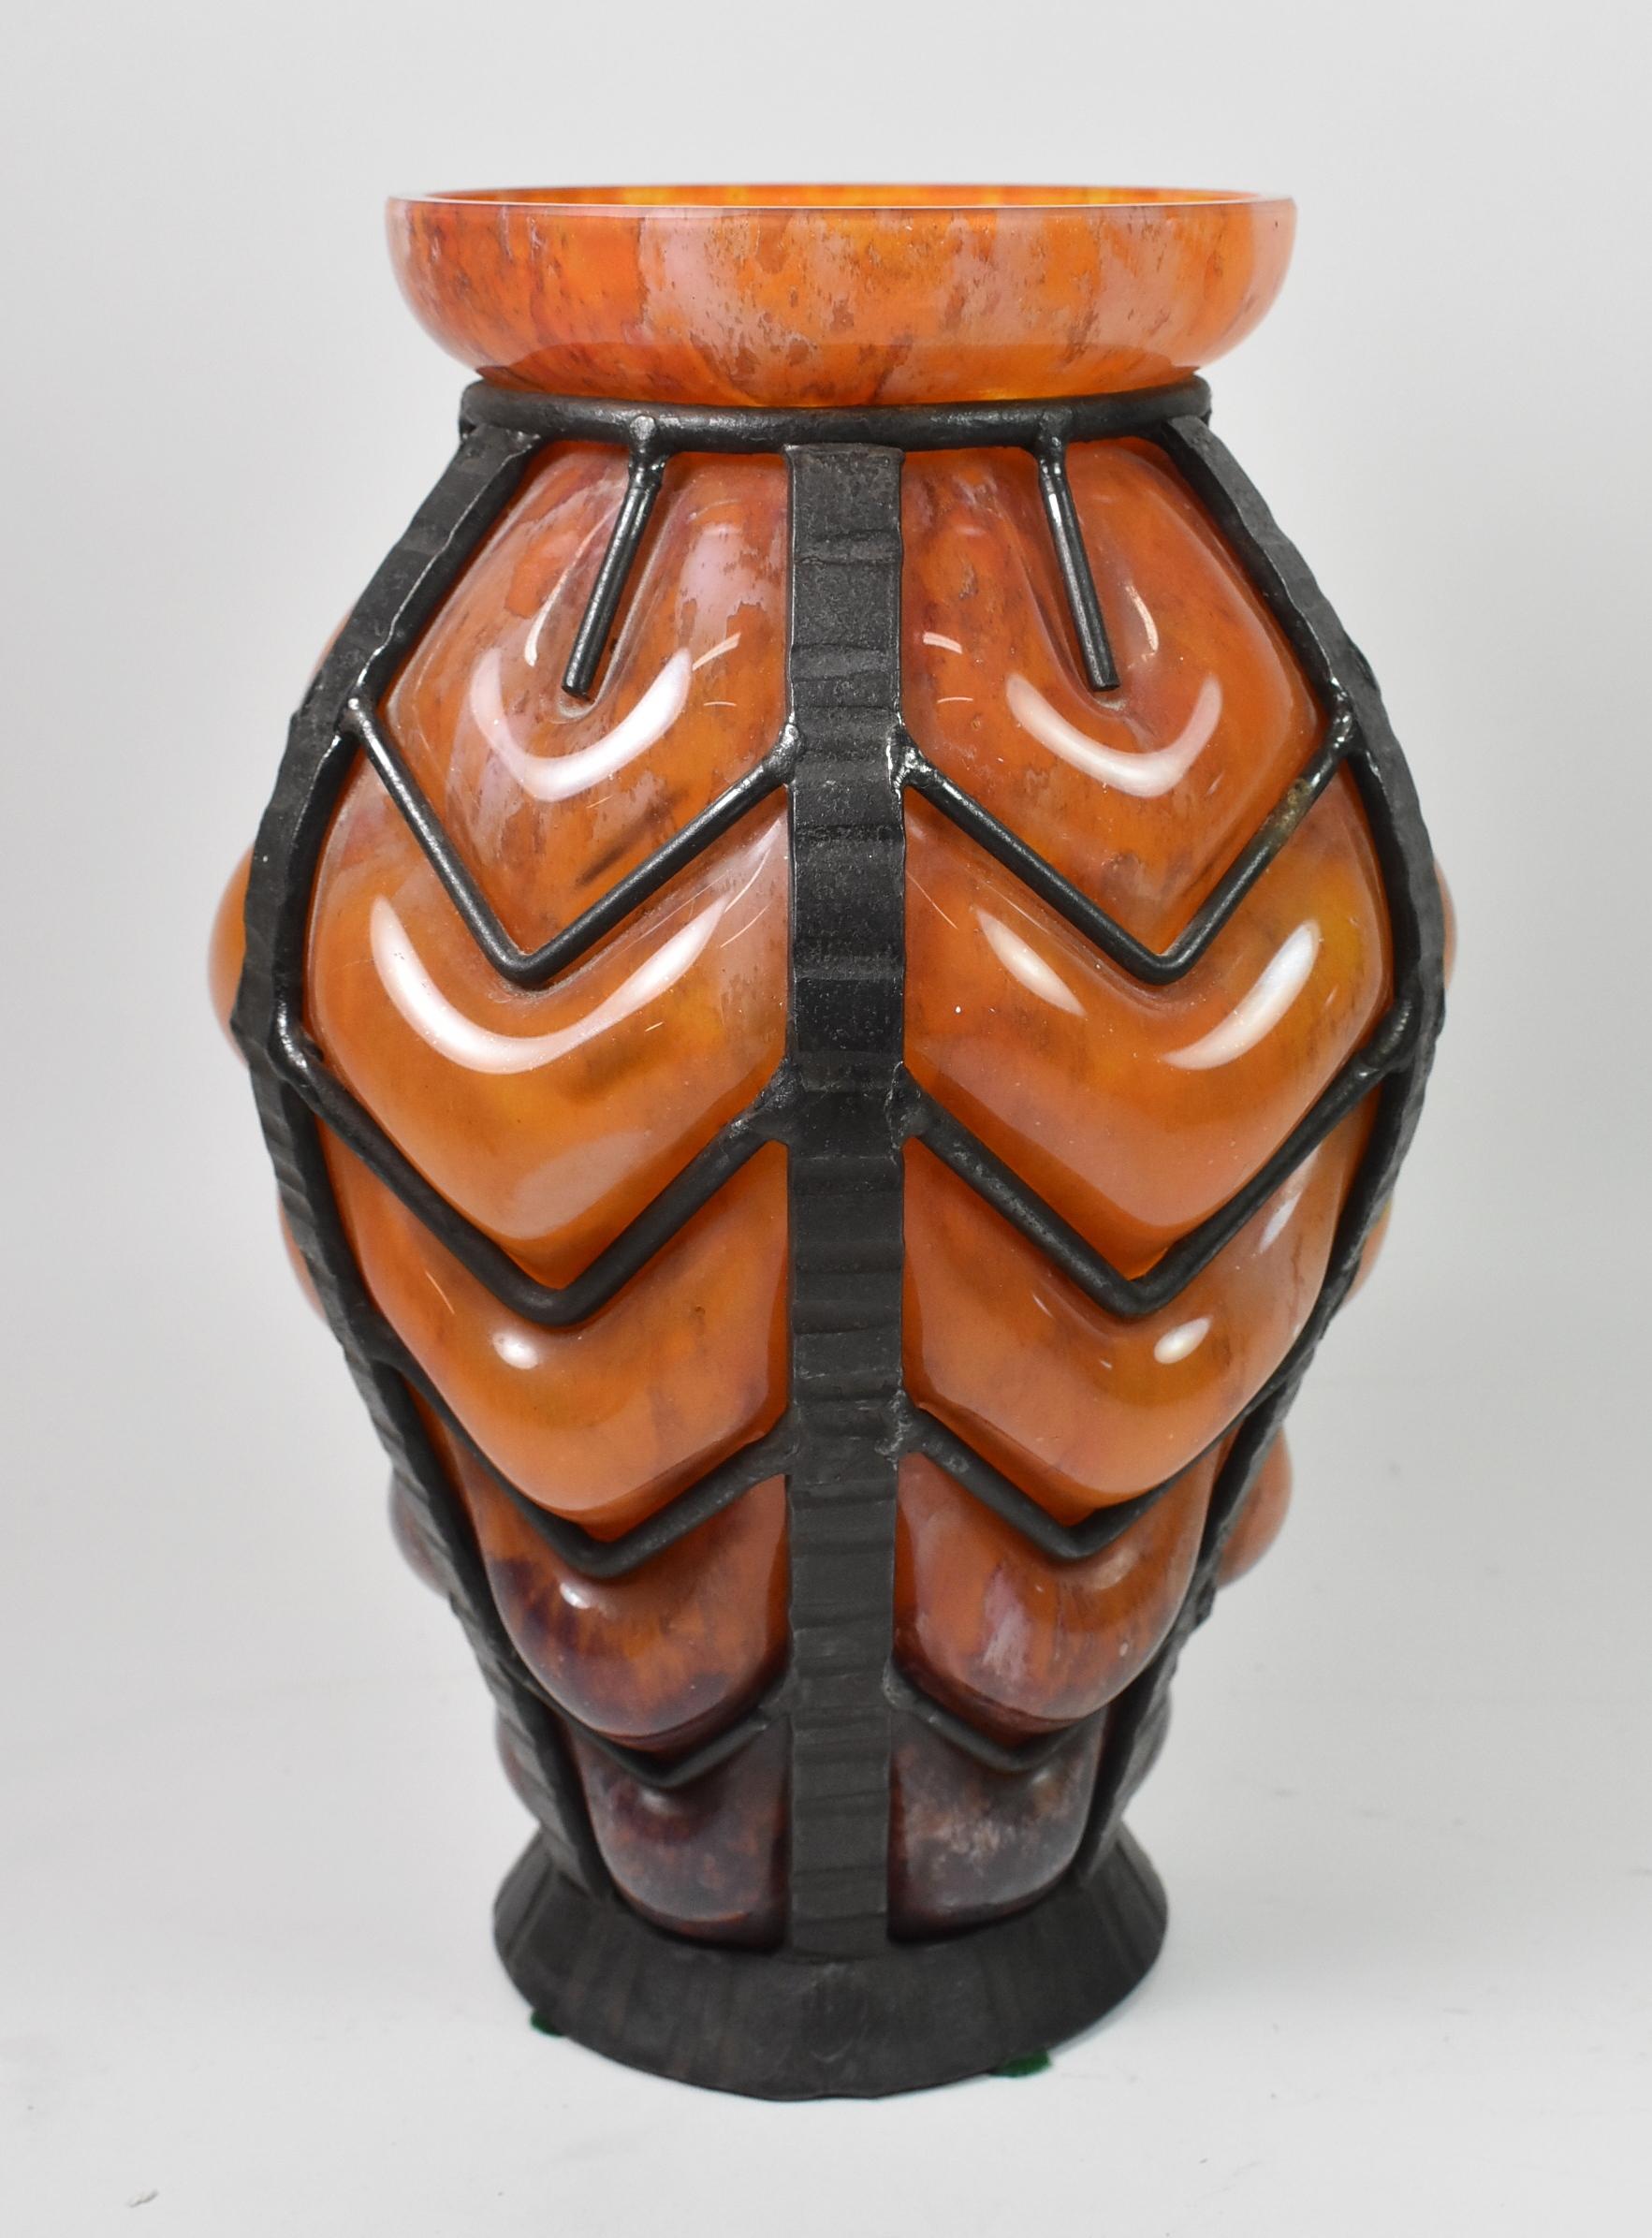 Un vase en verre d'art français Art Déco de Nancy Daum et Louis Majorelle. Ce vase étonnant est composé d'un vase en verre soufflé aux nuances variées d'orange, de blanc et de brun, entouré d'une cage en fer forgé fabriquée à la main. Non signée.